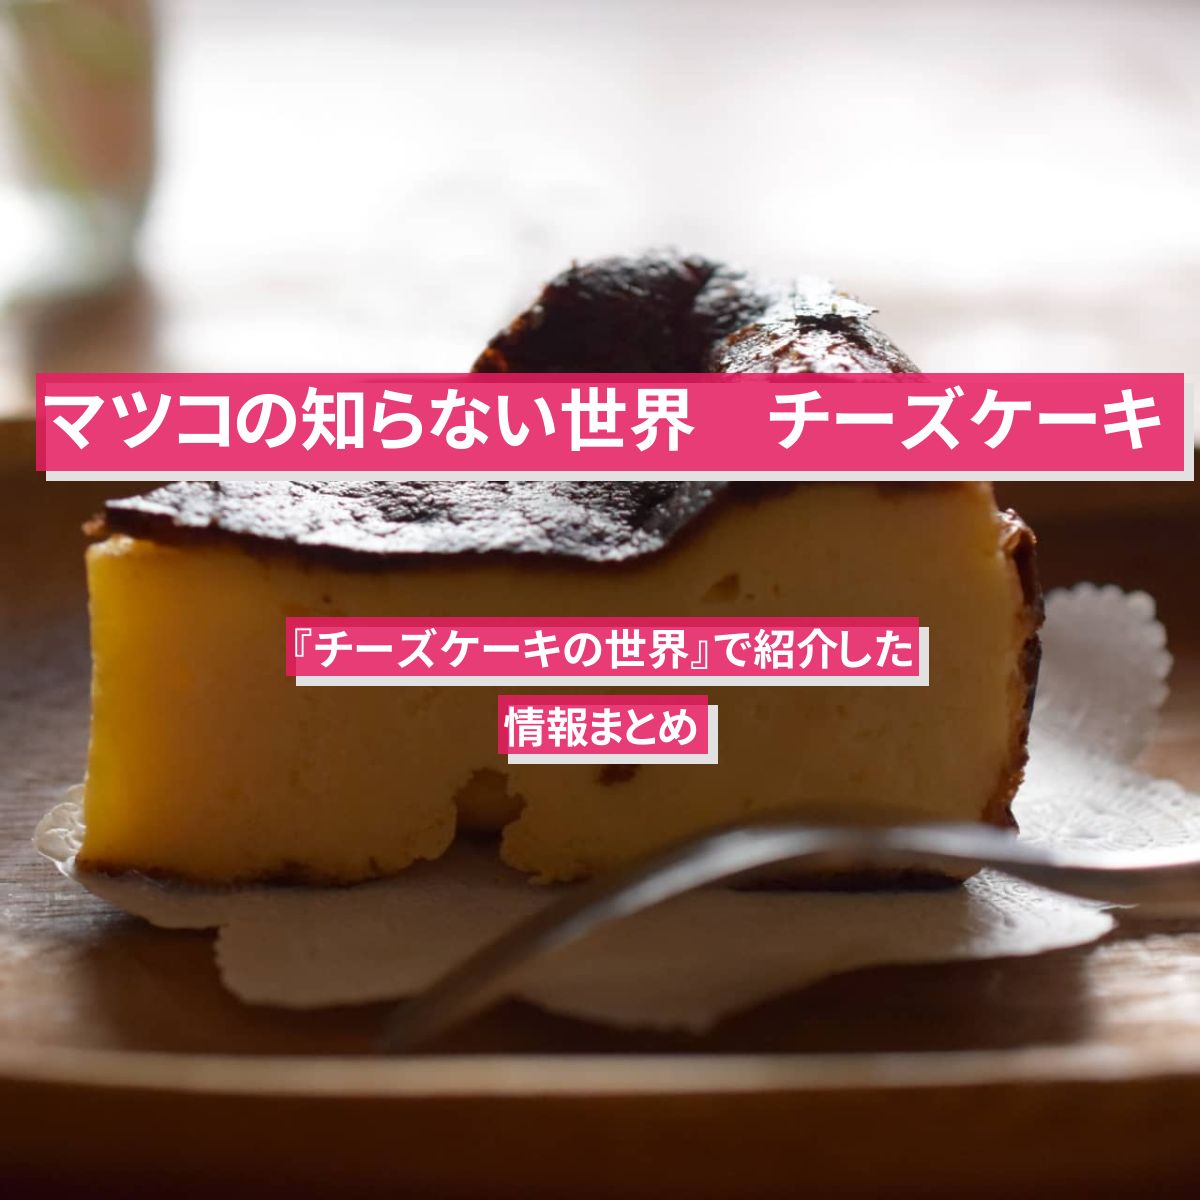 【マツコの知らない世界】『チーズケーキの世界』で紹介したお店・情報まとめ